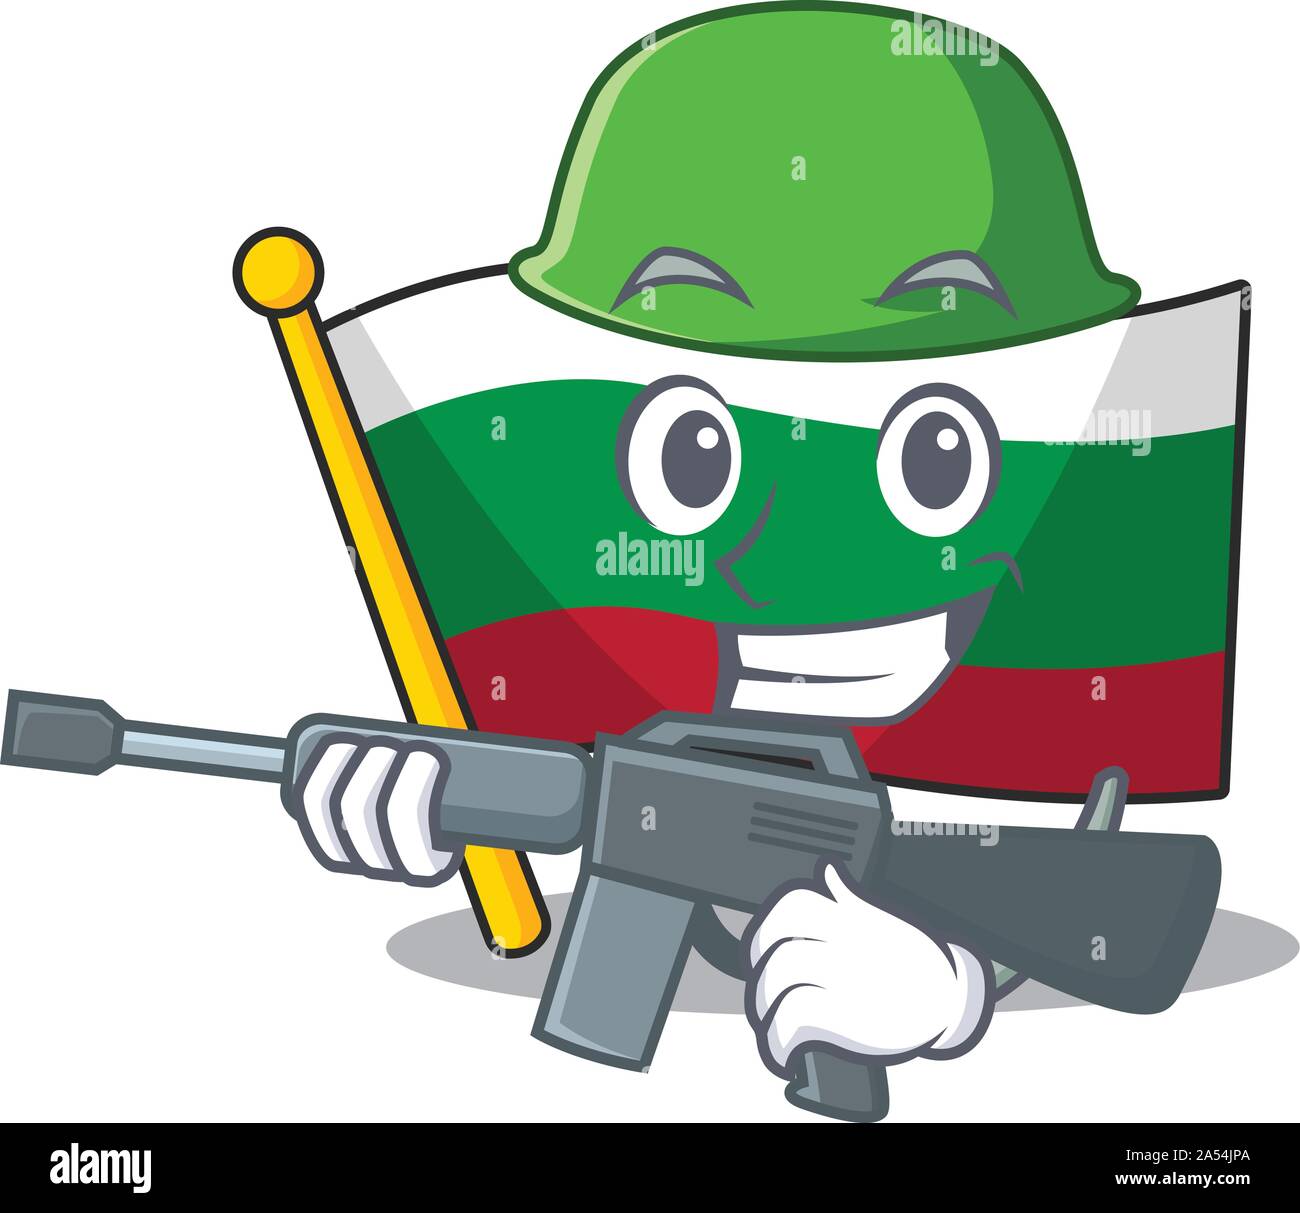 Army flag bulgarian hoisted on cartoon pole Stock Vector